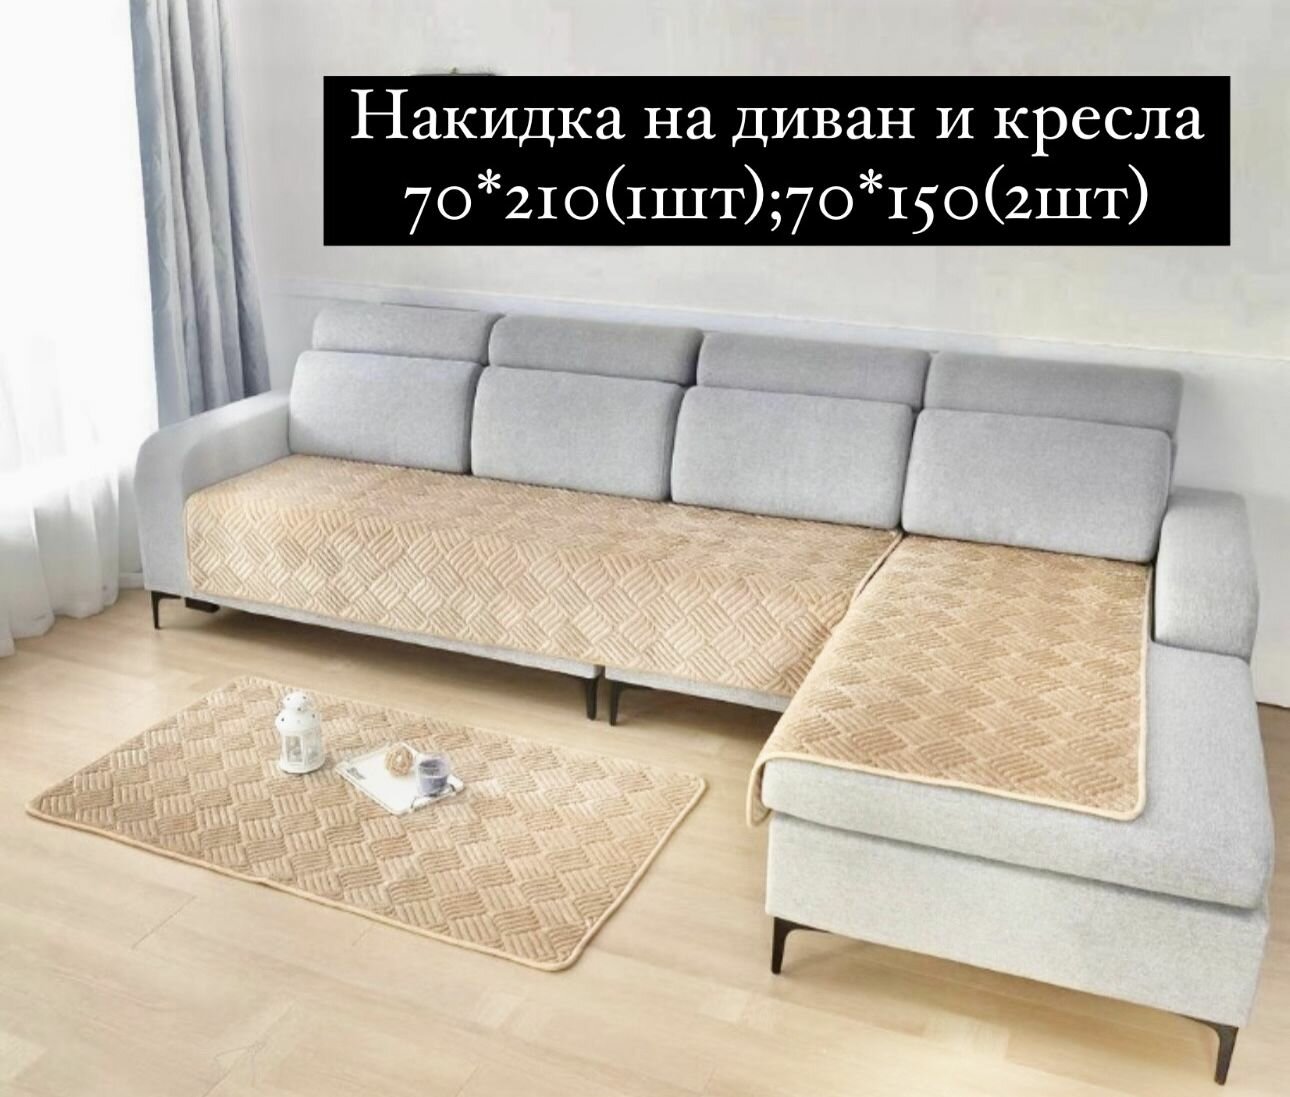 Накидки на диван и кресла 3 предмета 70*210(1шт);70*150(2шт).